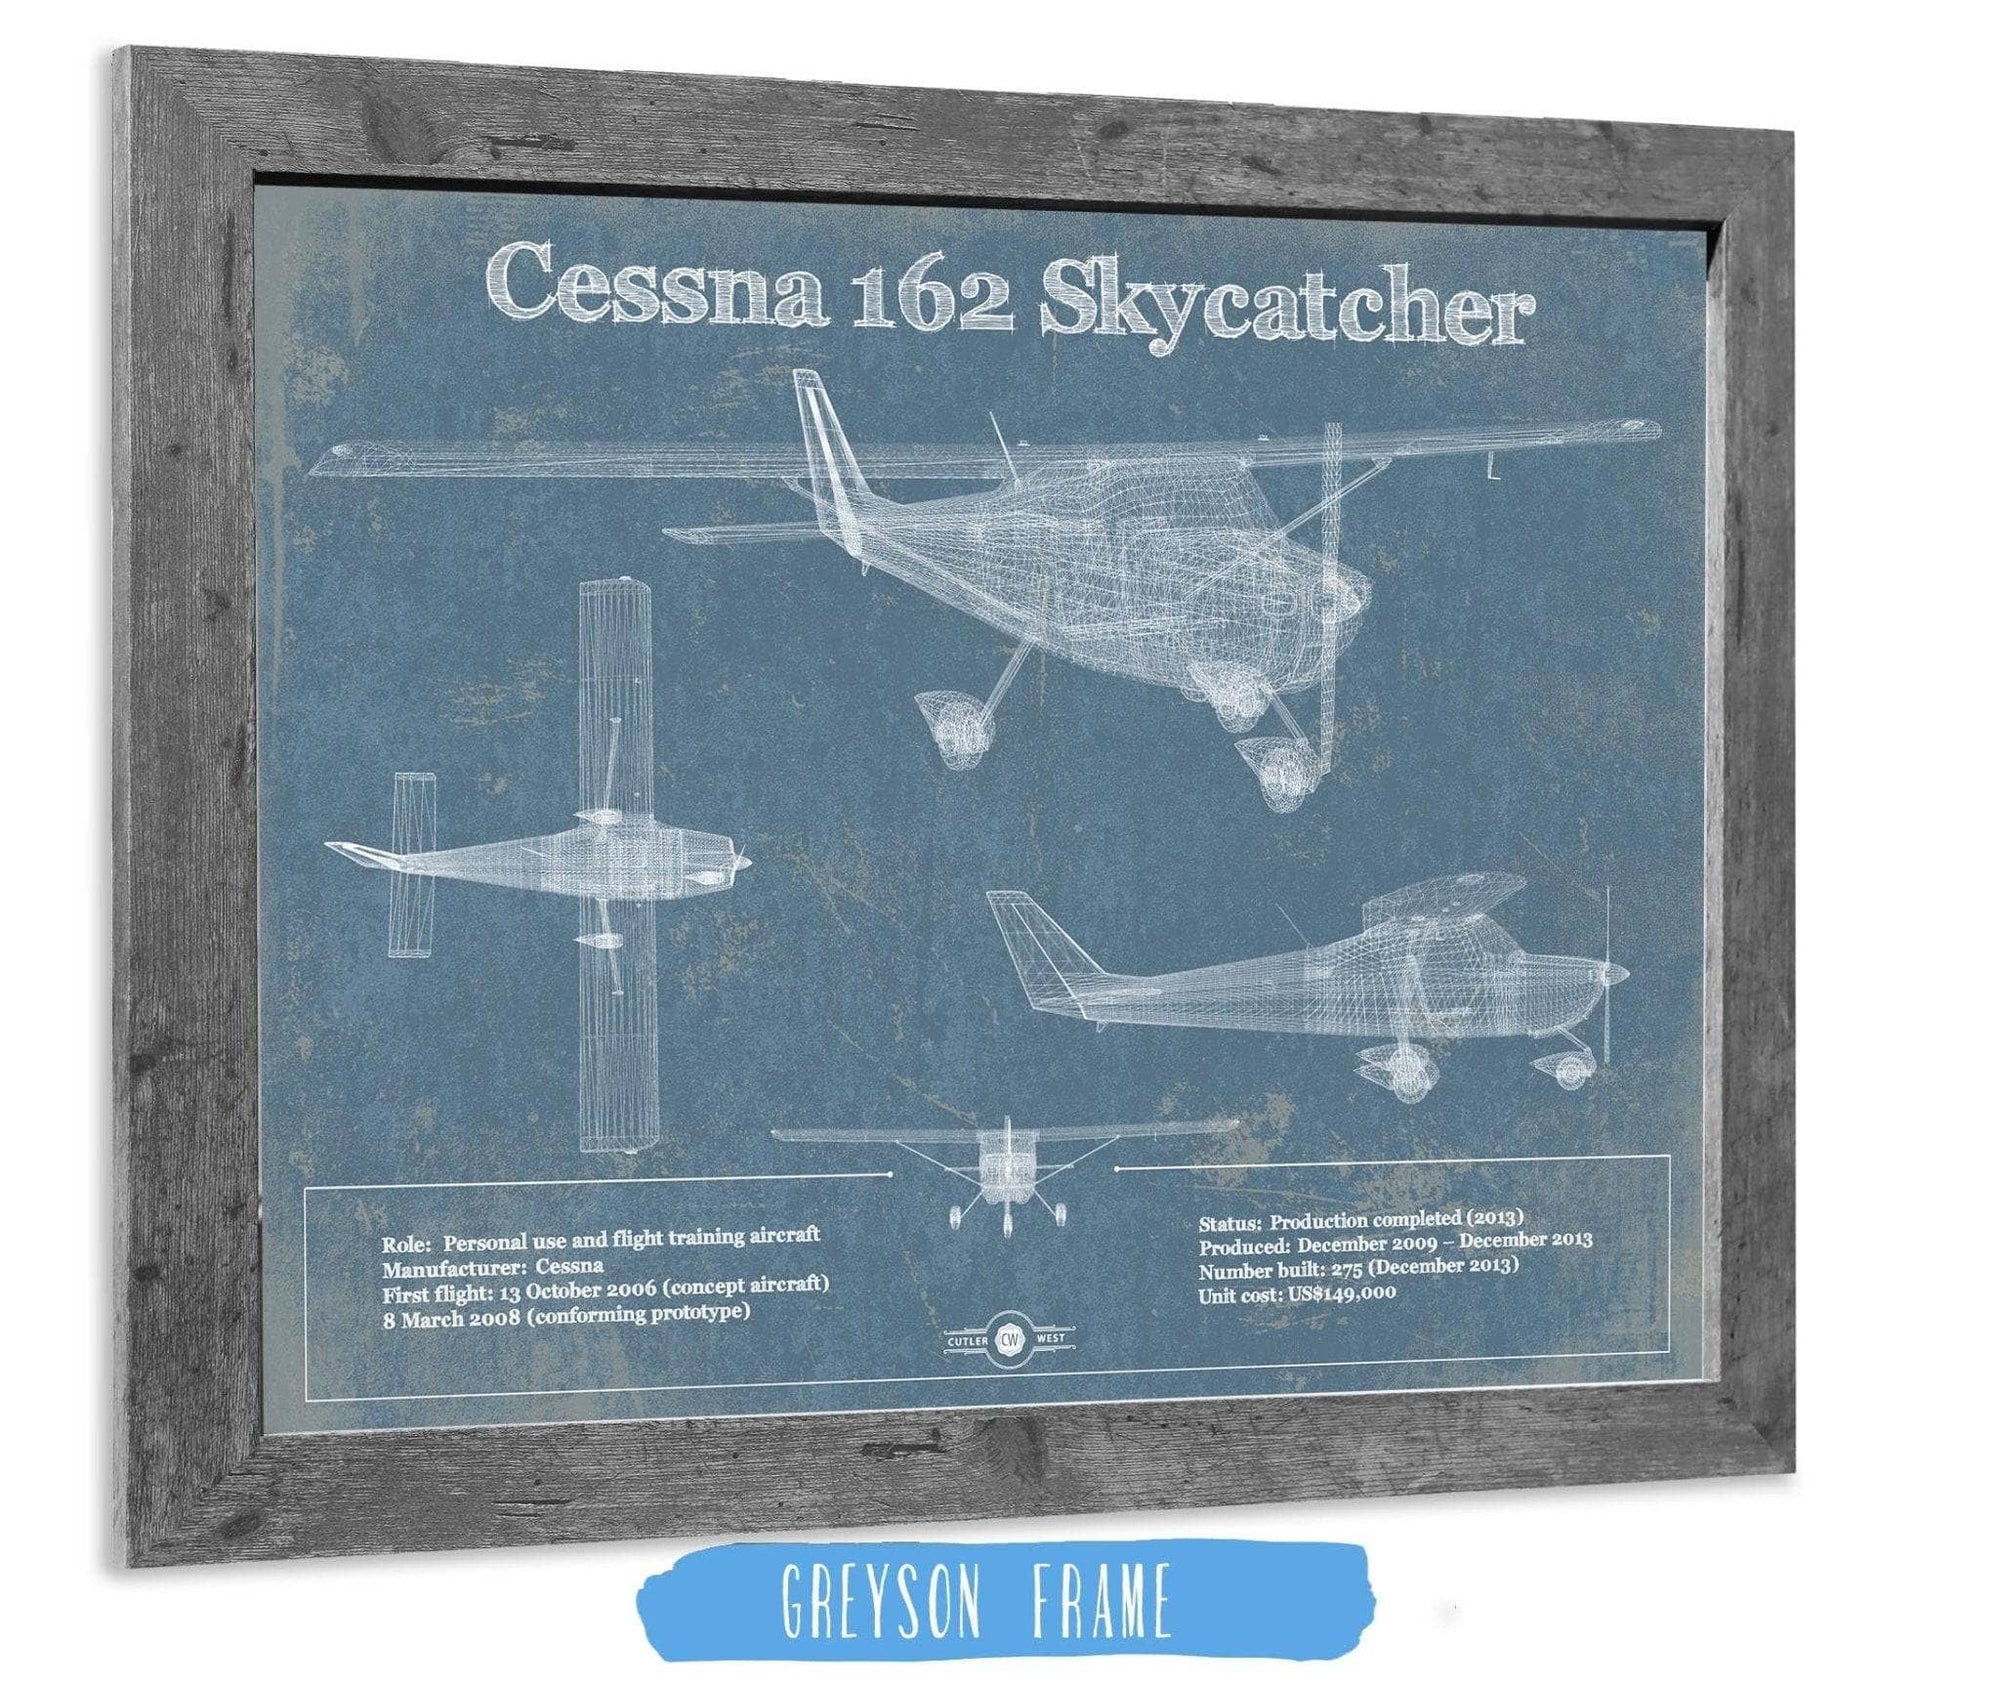 Cutler West Cessna Collection 14" x 11" / Greyson Frame Cessna 162 Skycatcher Original Blueprint Art 845000239_49668